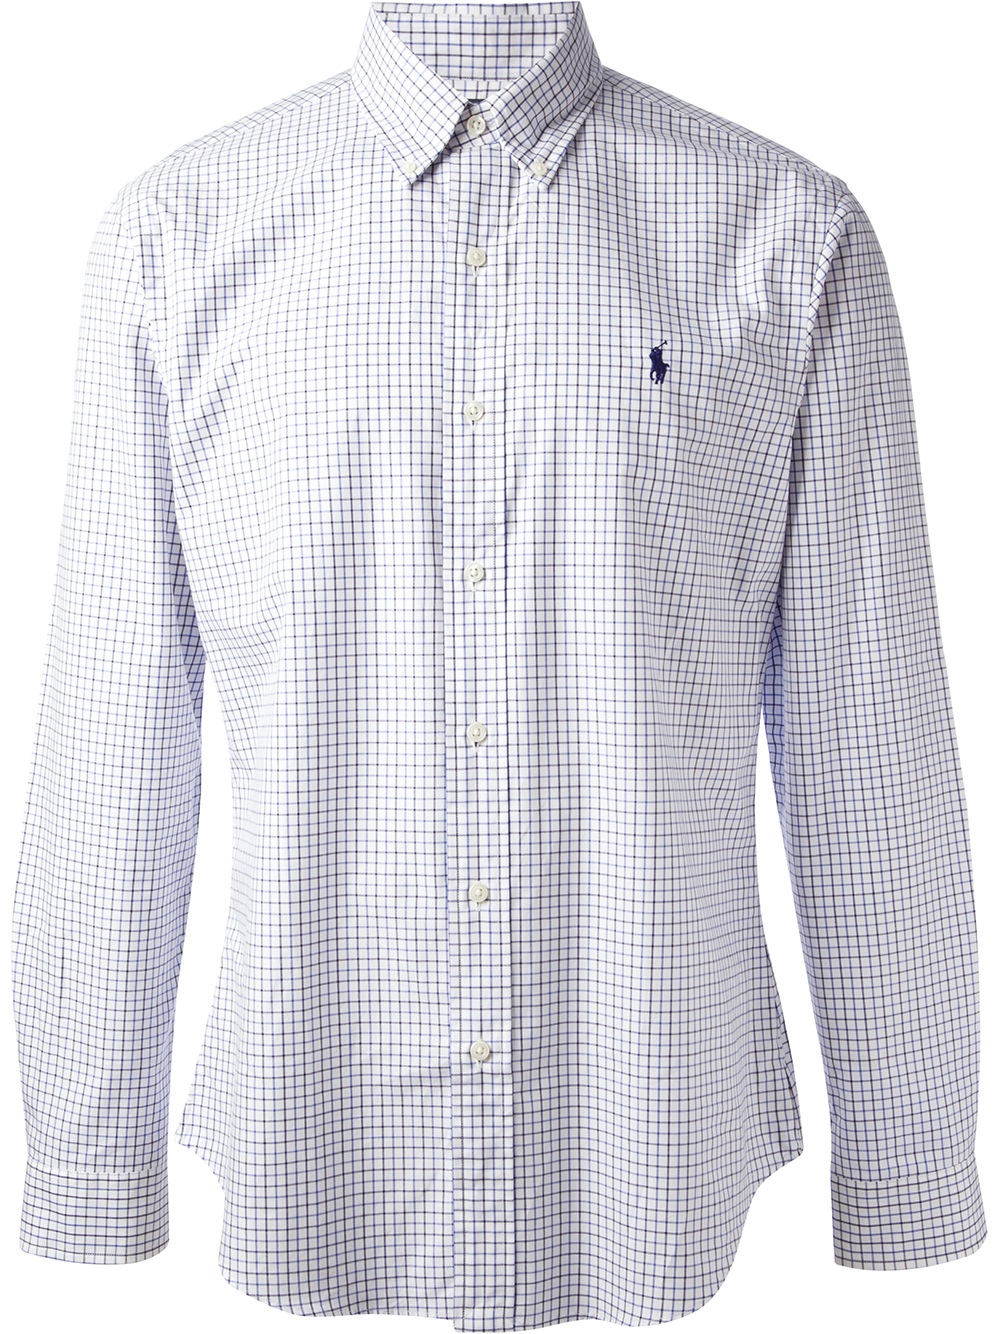 Lyst - Polo Ralph Lauren Check Shirt in White for Men